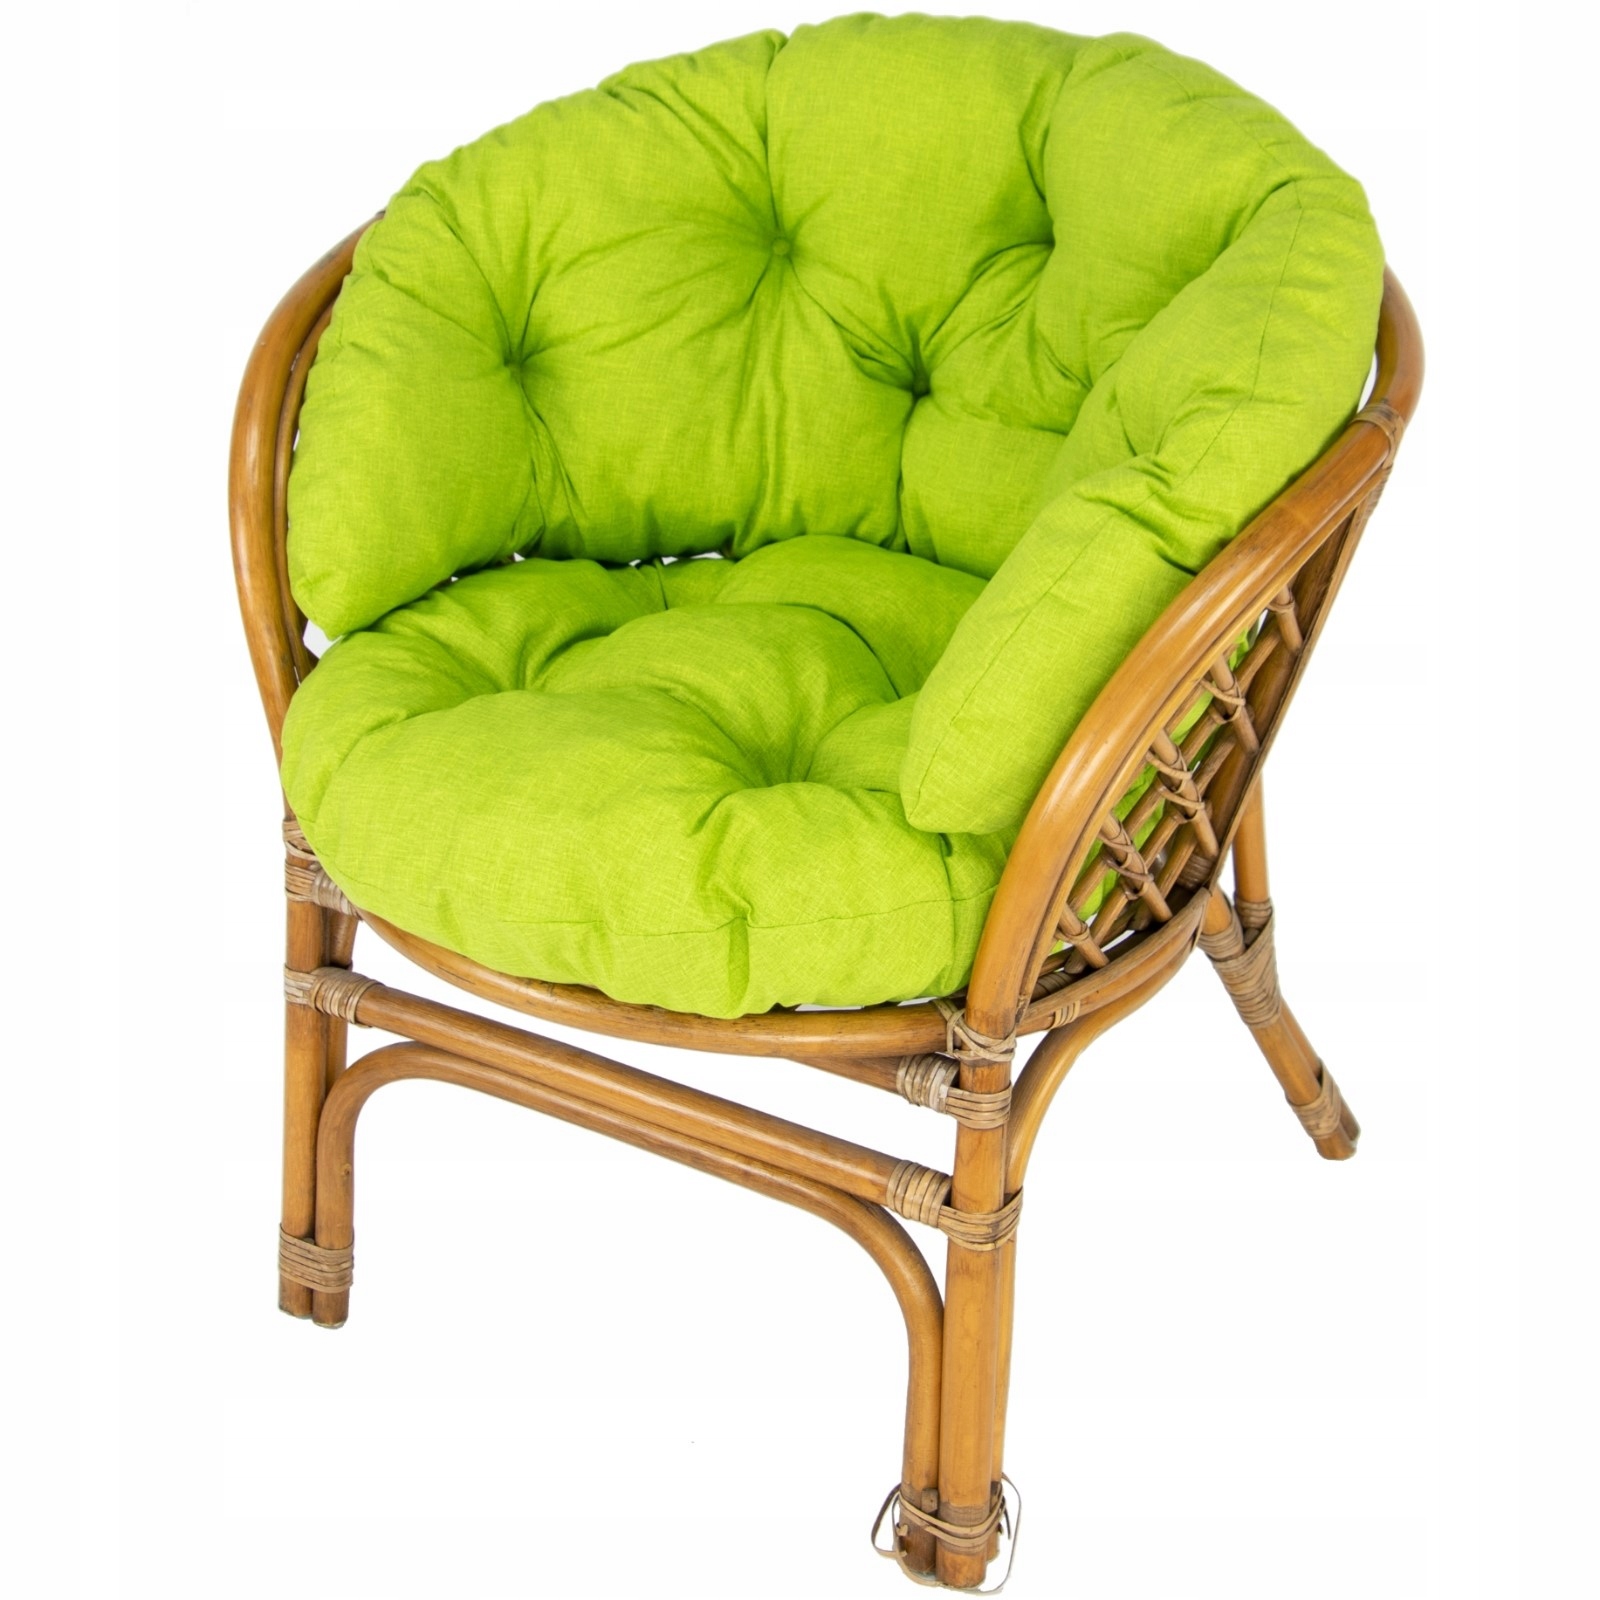 Купить подушку из ротанга. Кресло, Hamza, ротанг, подушка. Кресло ратан. Подушка для кресла из ротанга. Плетеное кресло с подушкой.